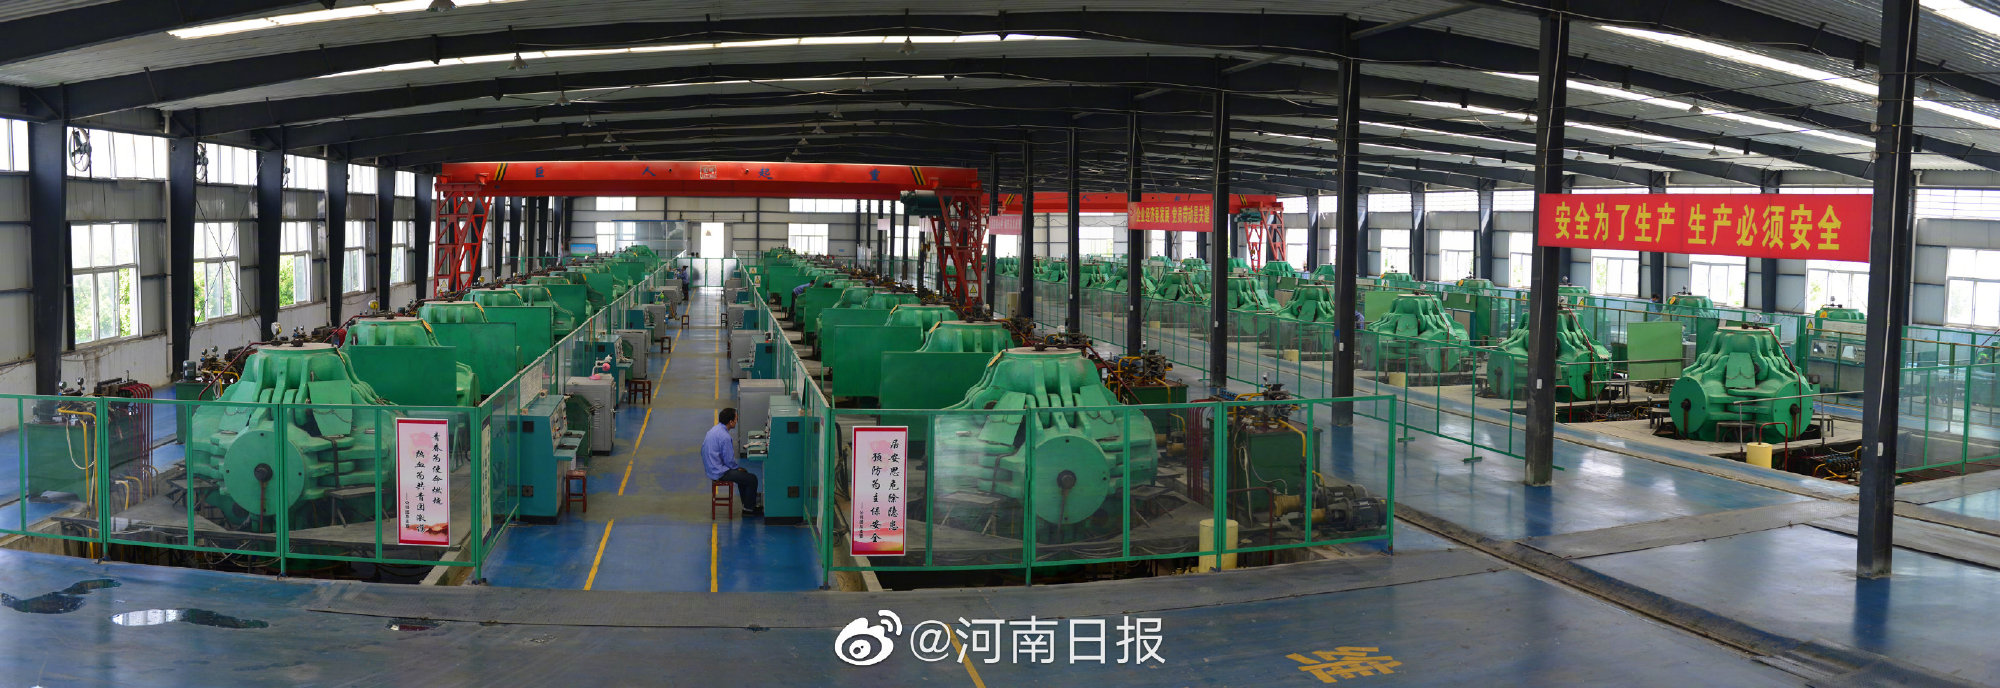 تشيتشنغ، تنتج 8 ملايين قيراط من الألماس سنويا